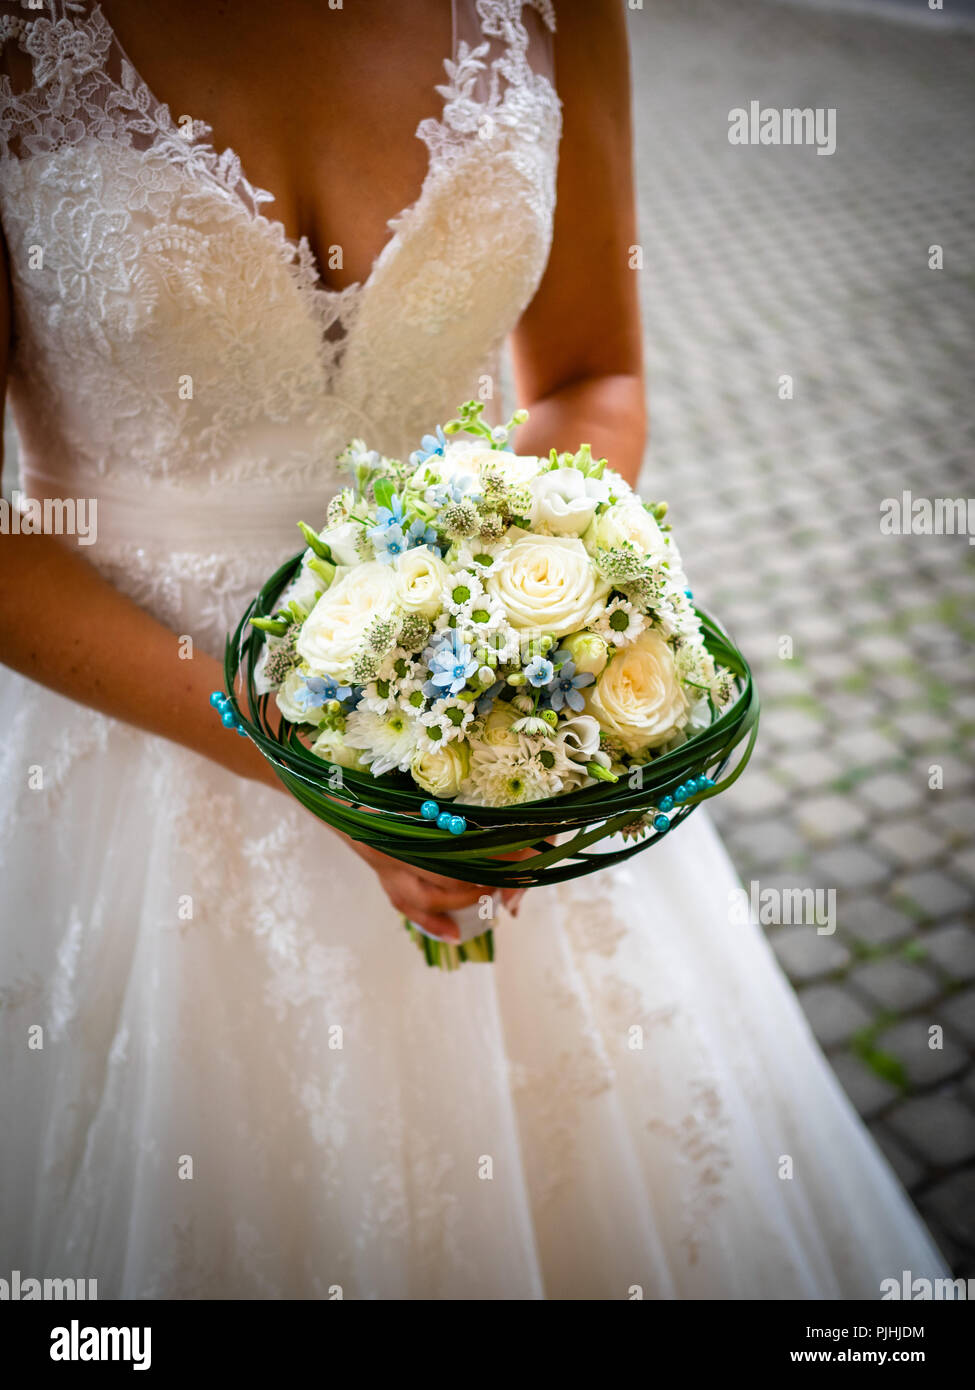 Die Braut hält den Strauß mit weißen Rosen und kleinen blauen Blumen, mit  grünen Blättern und blauen Perlen umgeben, weiße Spitzen Kleid, und  Gänseblümchen Stockfotografie - Alamy